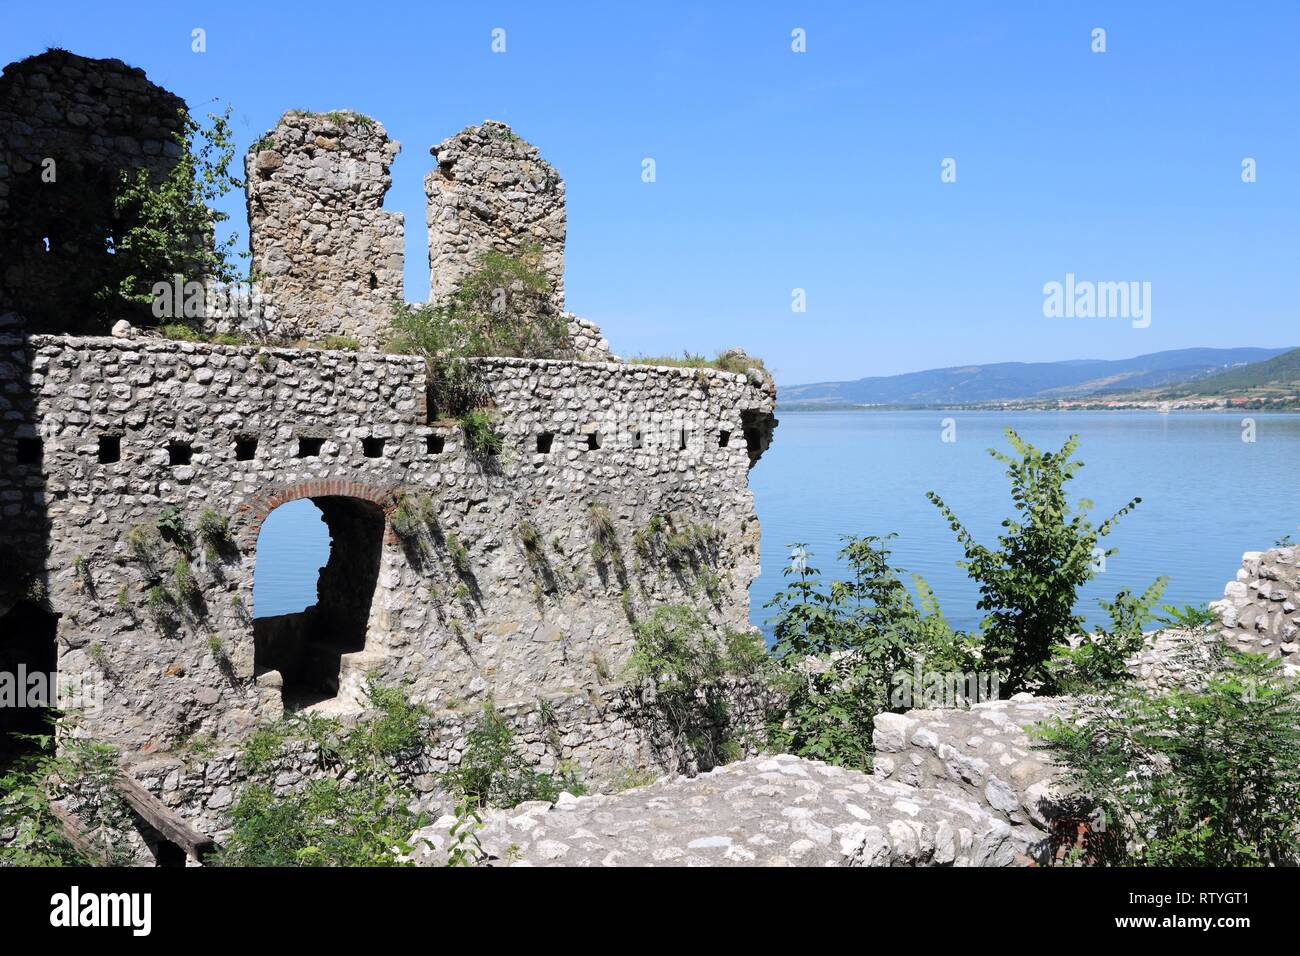 Golubac Fortress on Danube River in Branicevo, region of Serbia Stock Photo